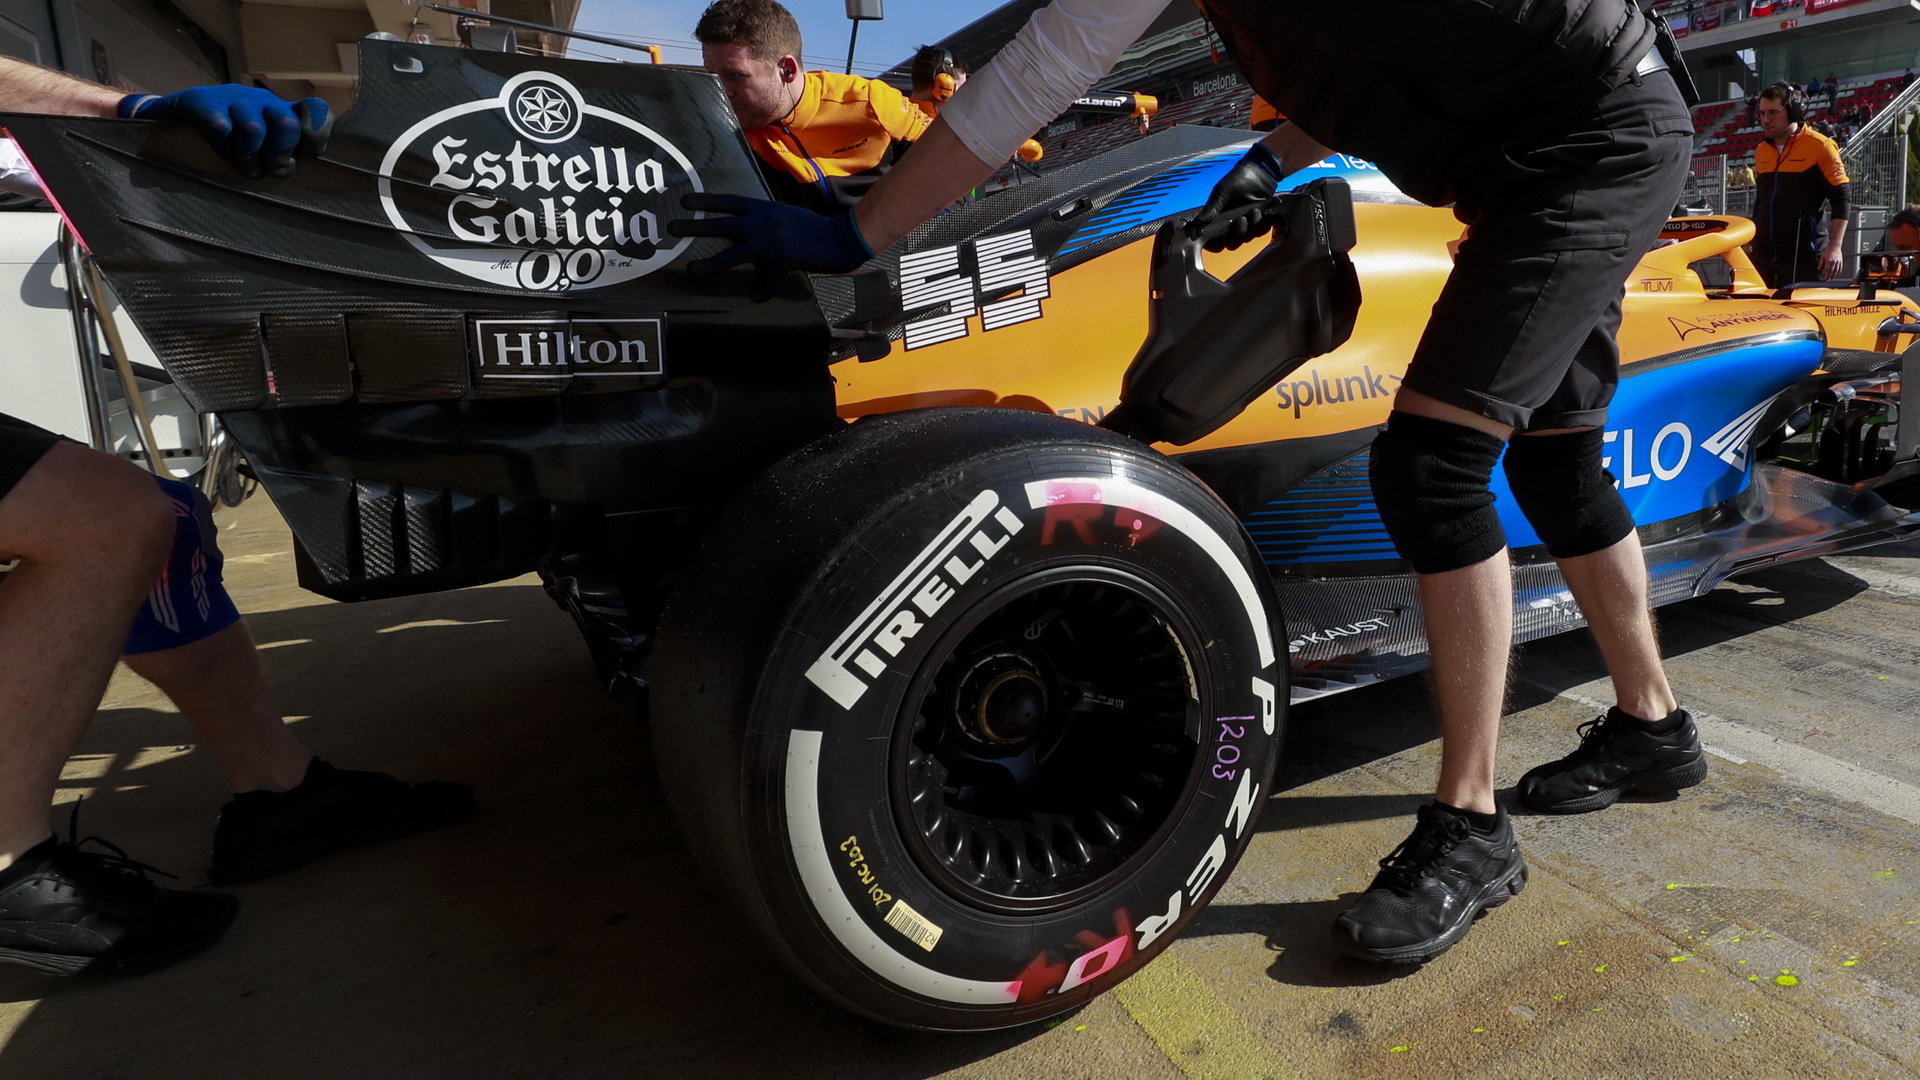 Carlos Sainz v rámci prvního dne předsezonních testů v Barceloně